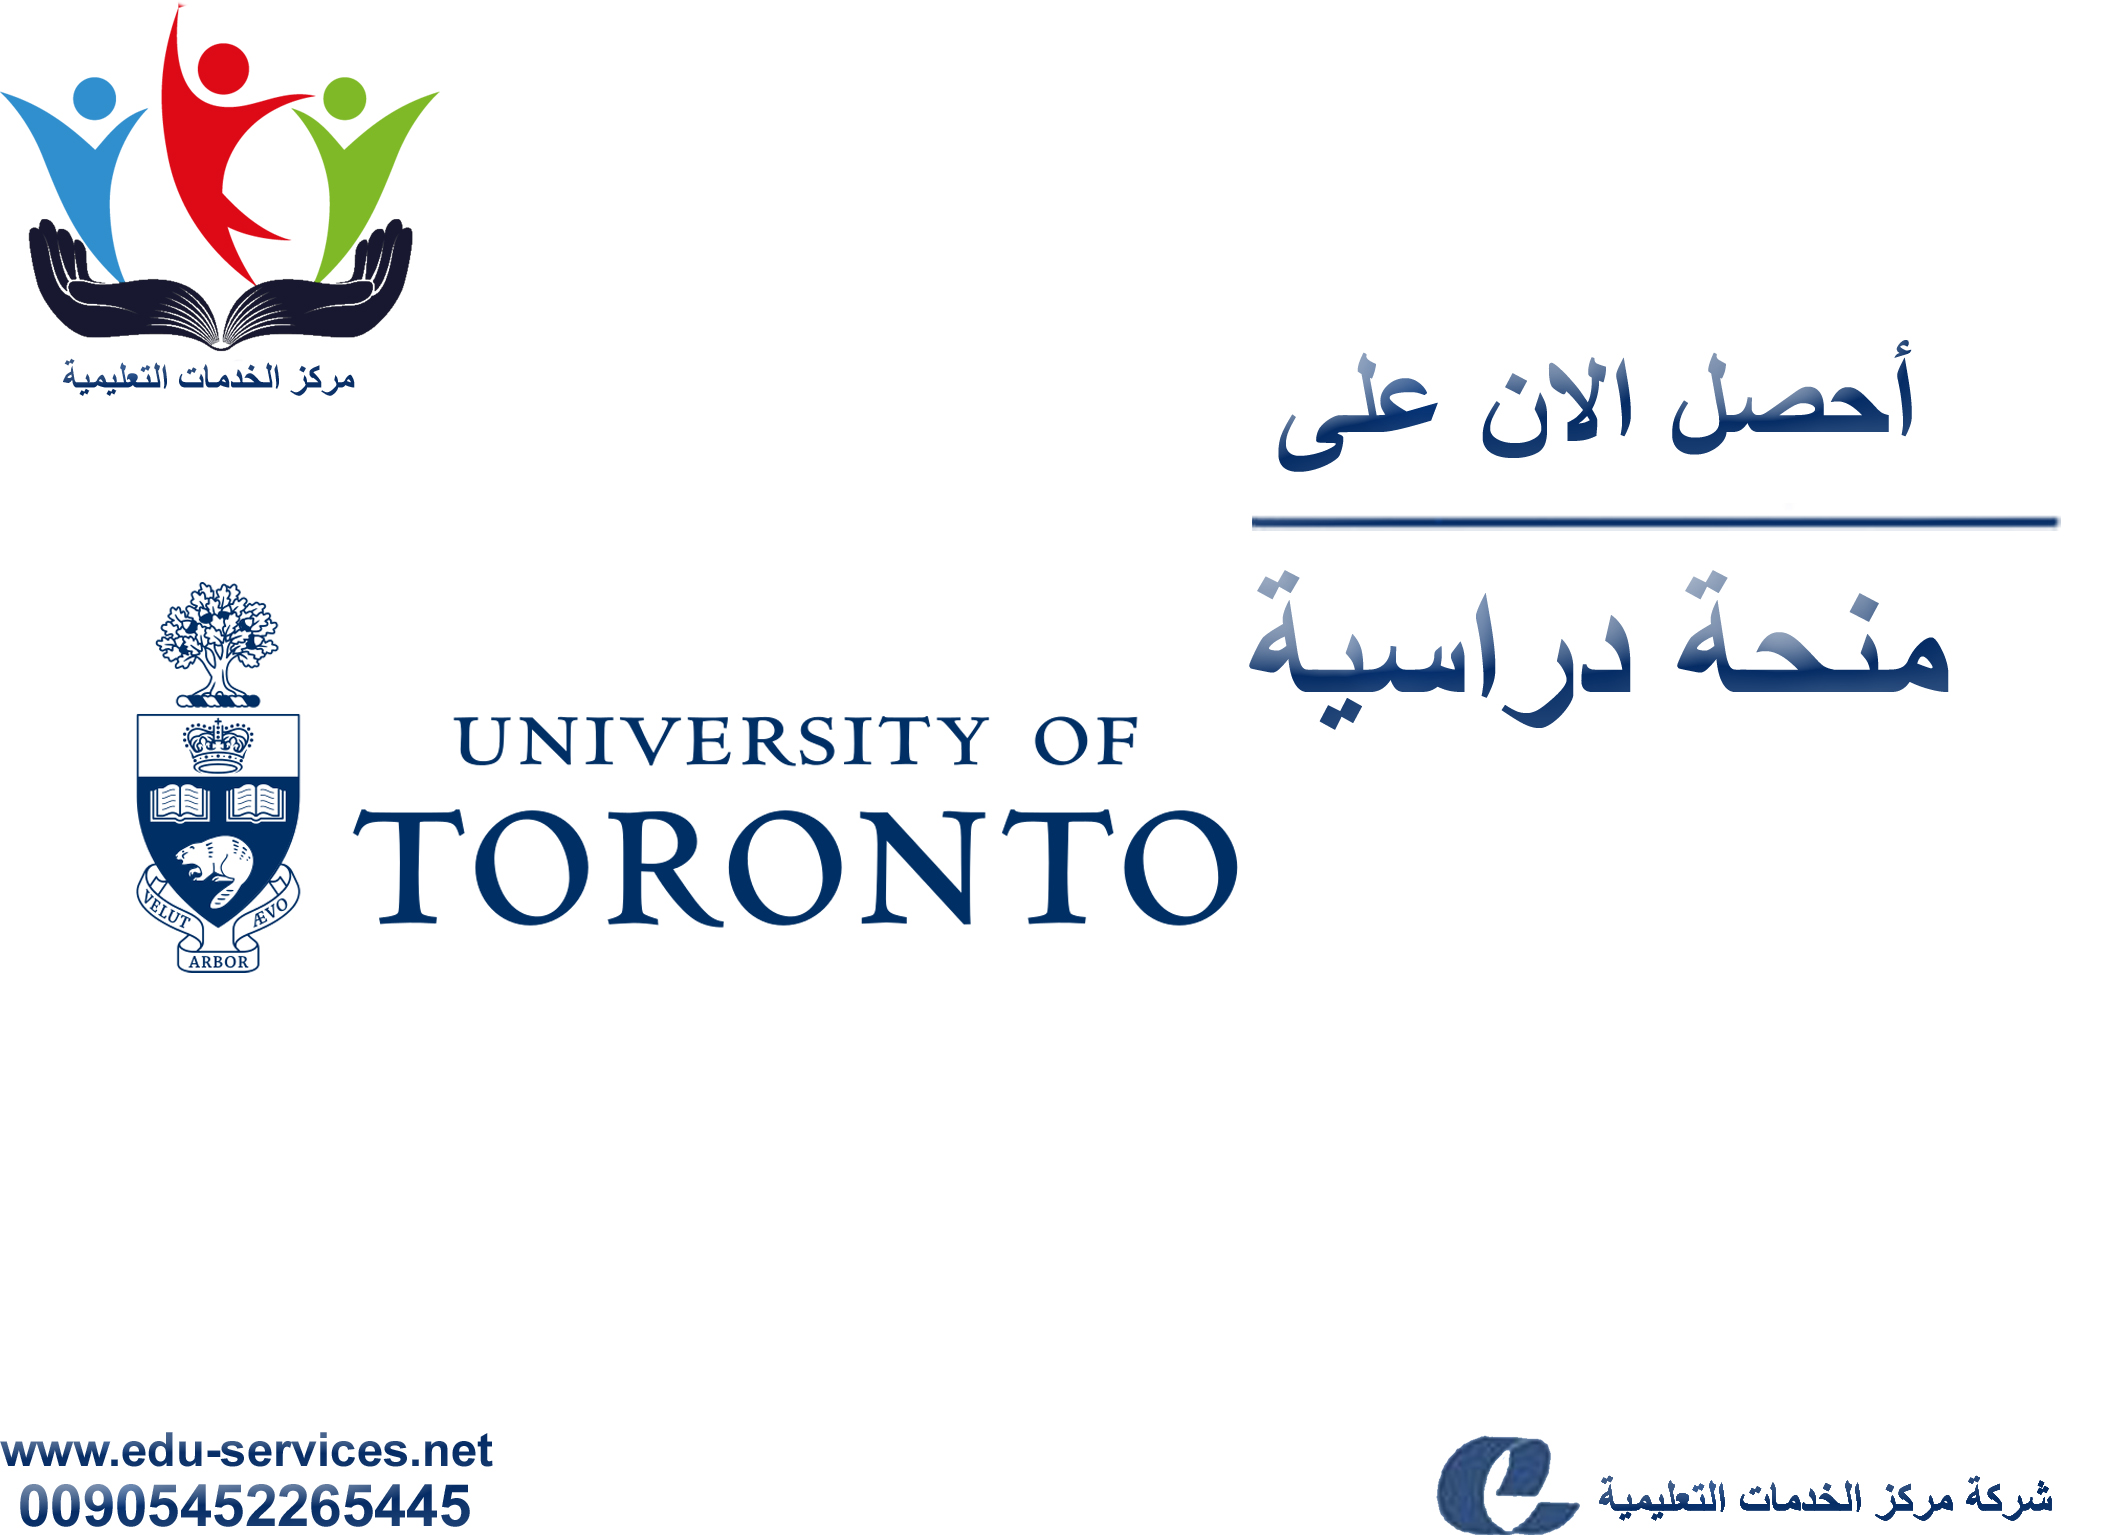 منح دراسية لدرجة البكالوريوس من UoT في كندا للعام 2018-2019